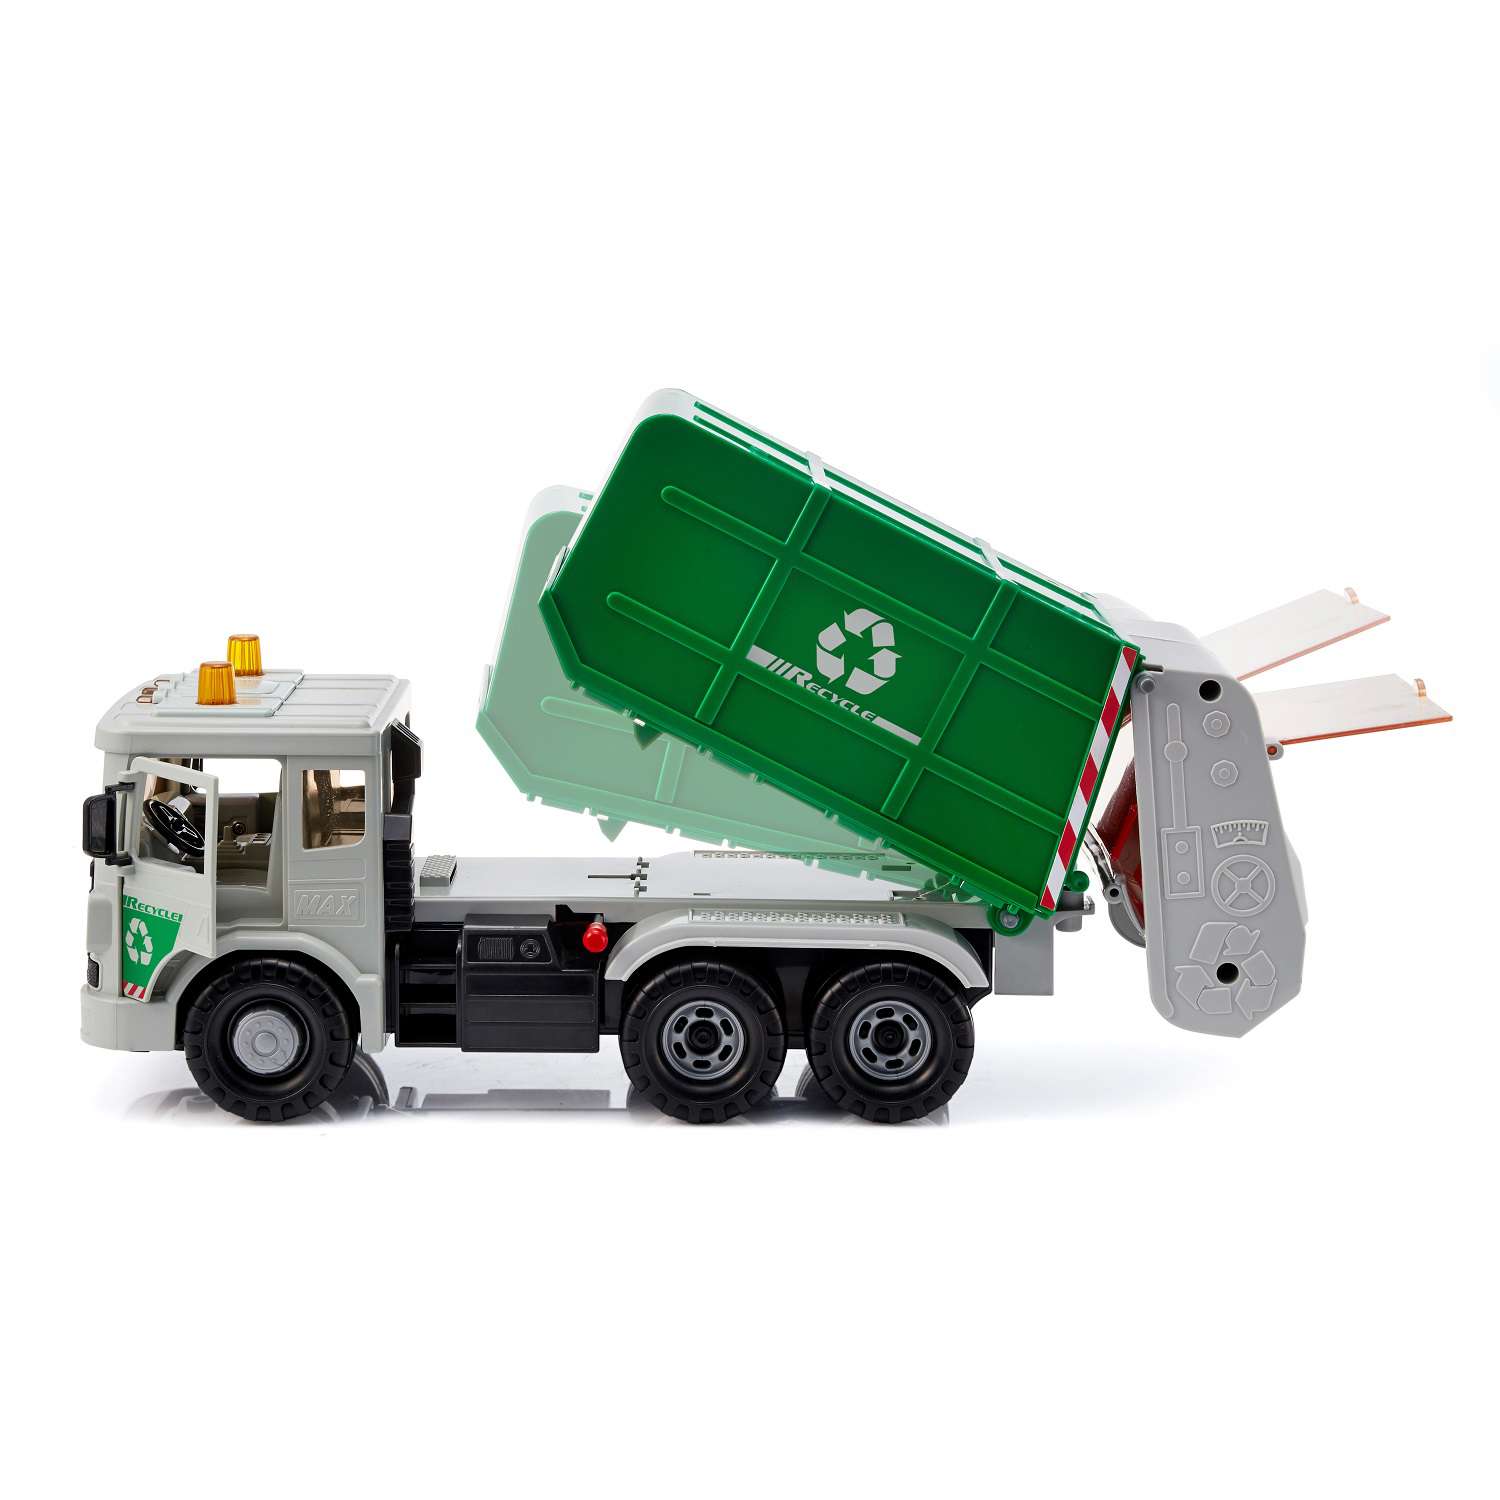 Мусоровоз зеленый. Дасунг машинка инерционная мусоровоз Daesung. Дасунг игрушка мусоровоз синий Daesung. Зеленый ГАЗ 3309 мусоровоз. Мусоровоз зеленый игрушка.